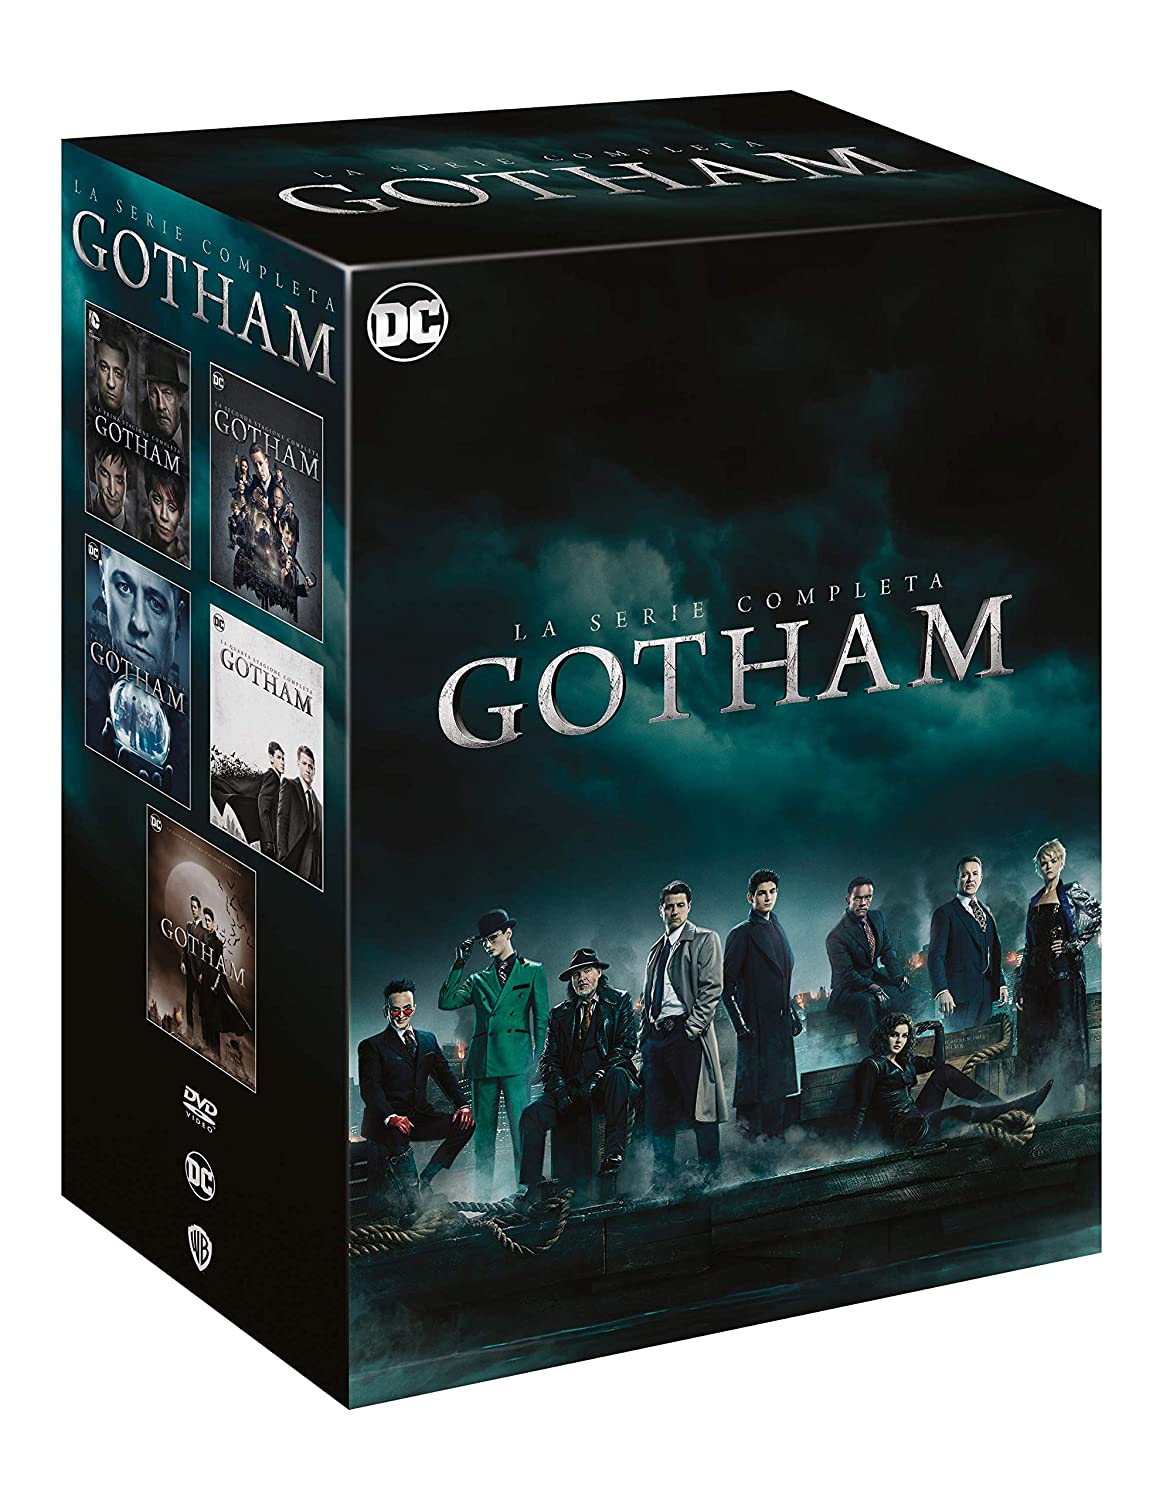 Dvd Gotham - La Serie Completa (26 Dvd) NUOVO SIGILLATO, EDIZIONE DEL 12/11/2020 SUBITO DISPONIBILE